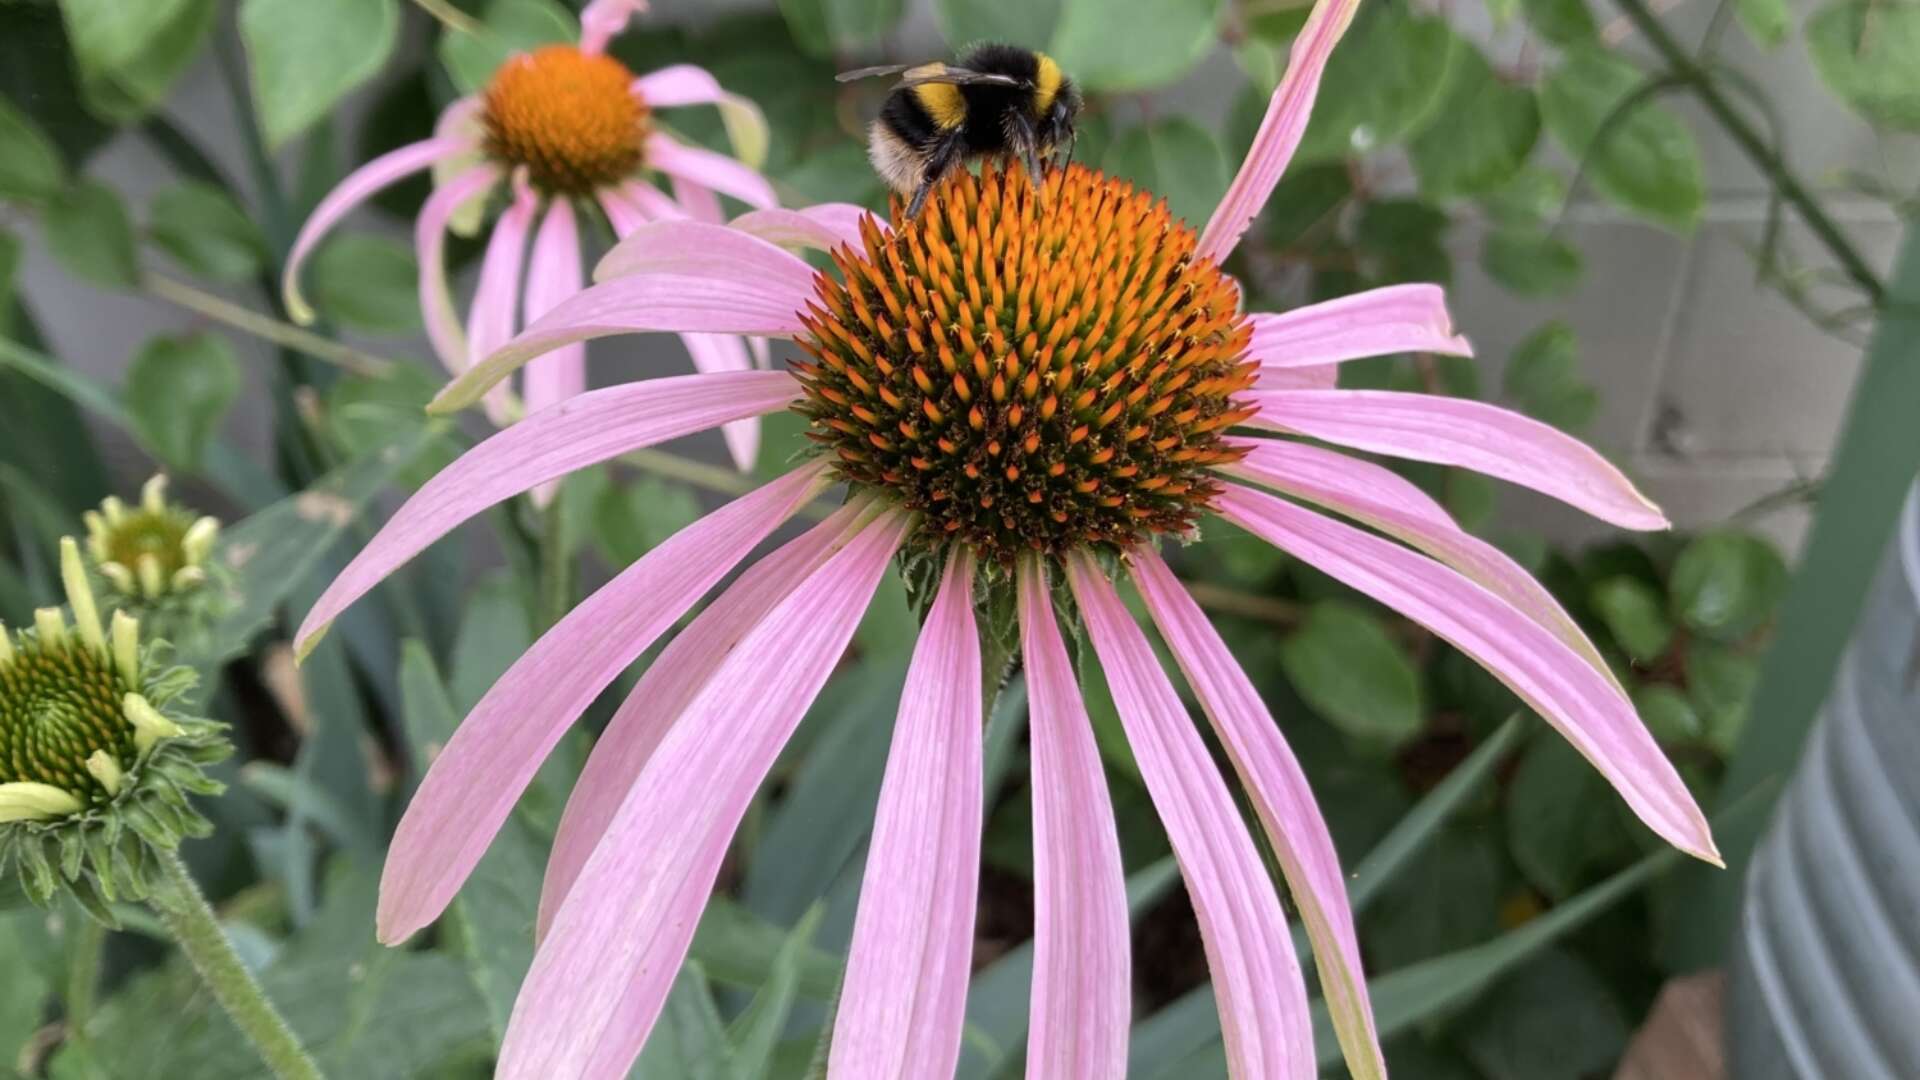 Bumblebee on echinacea.